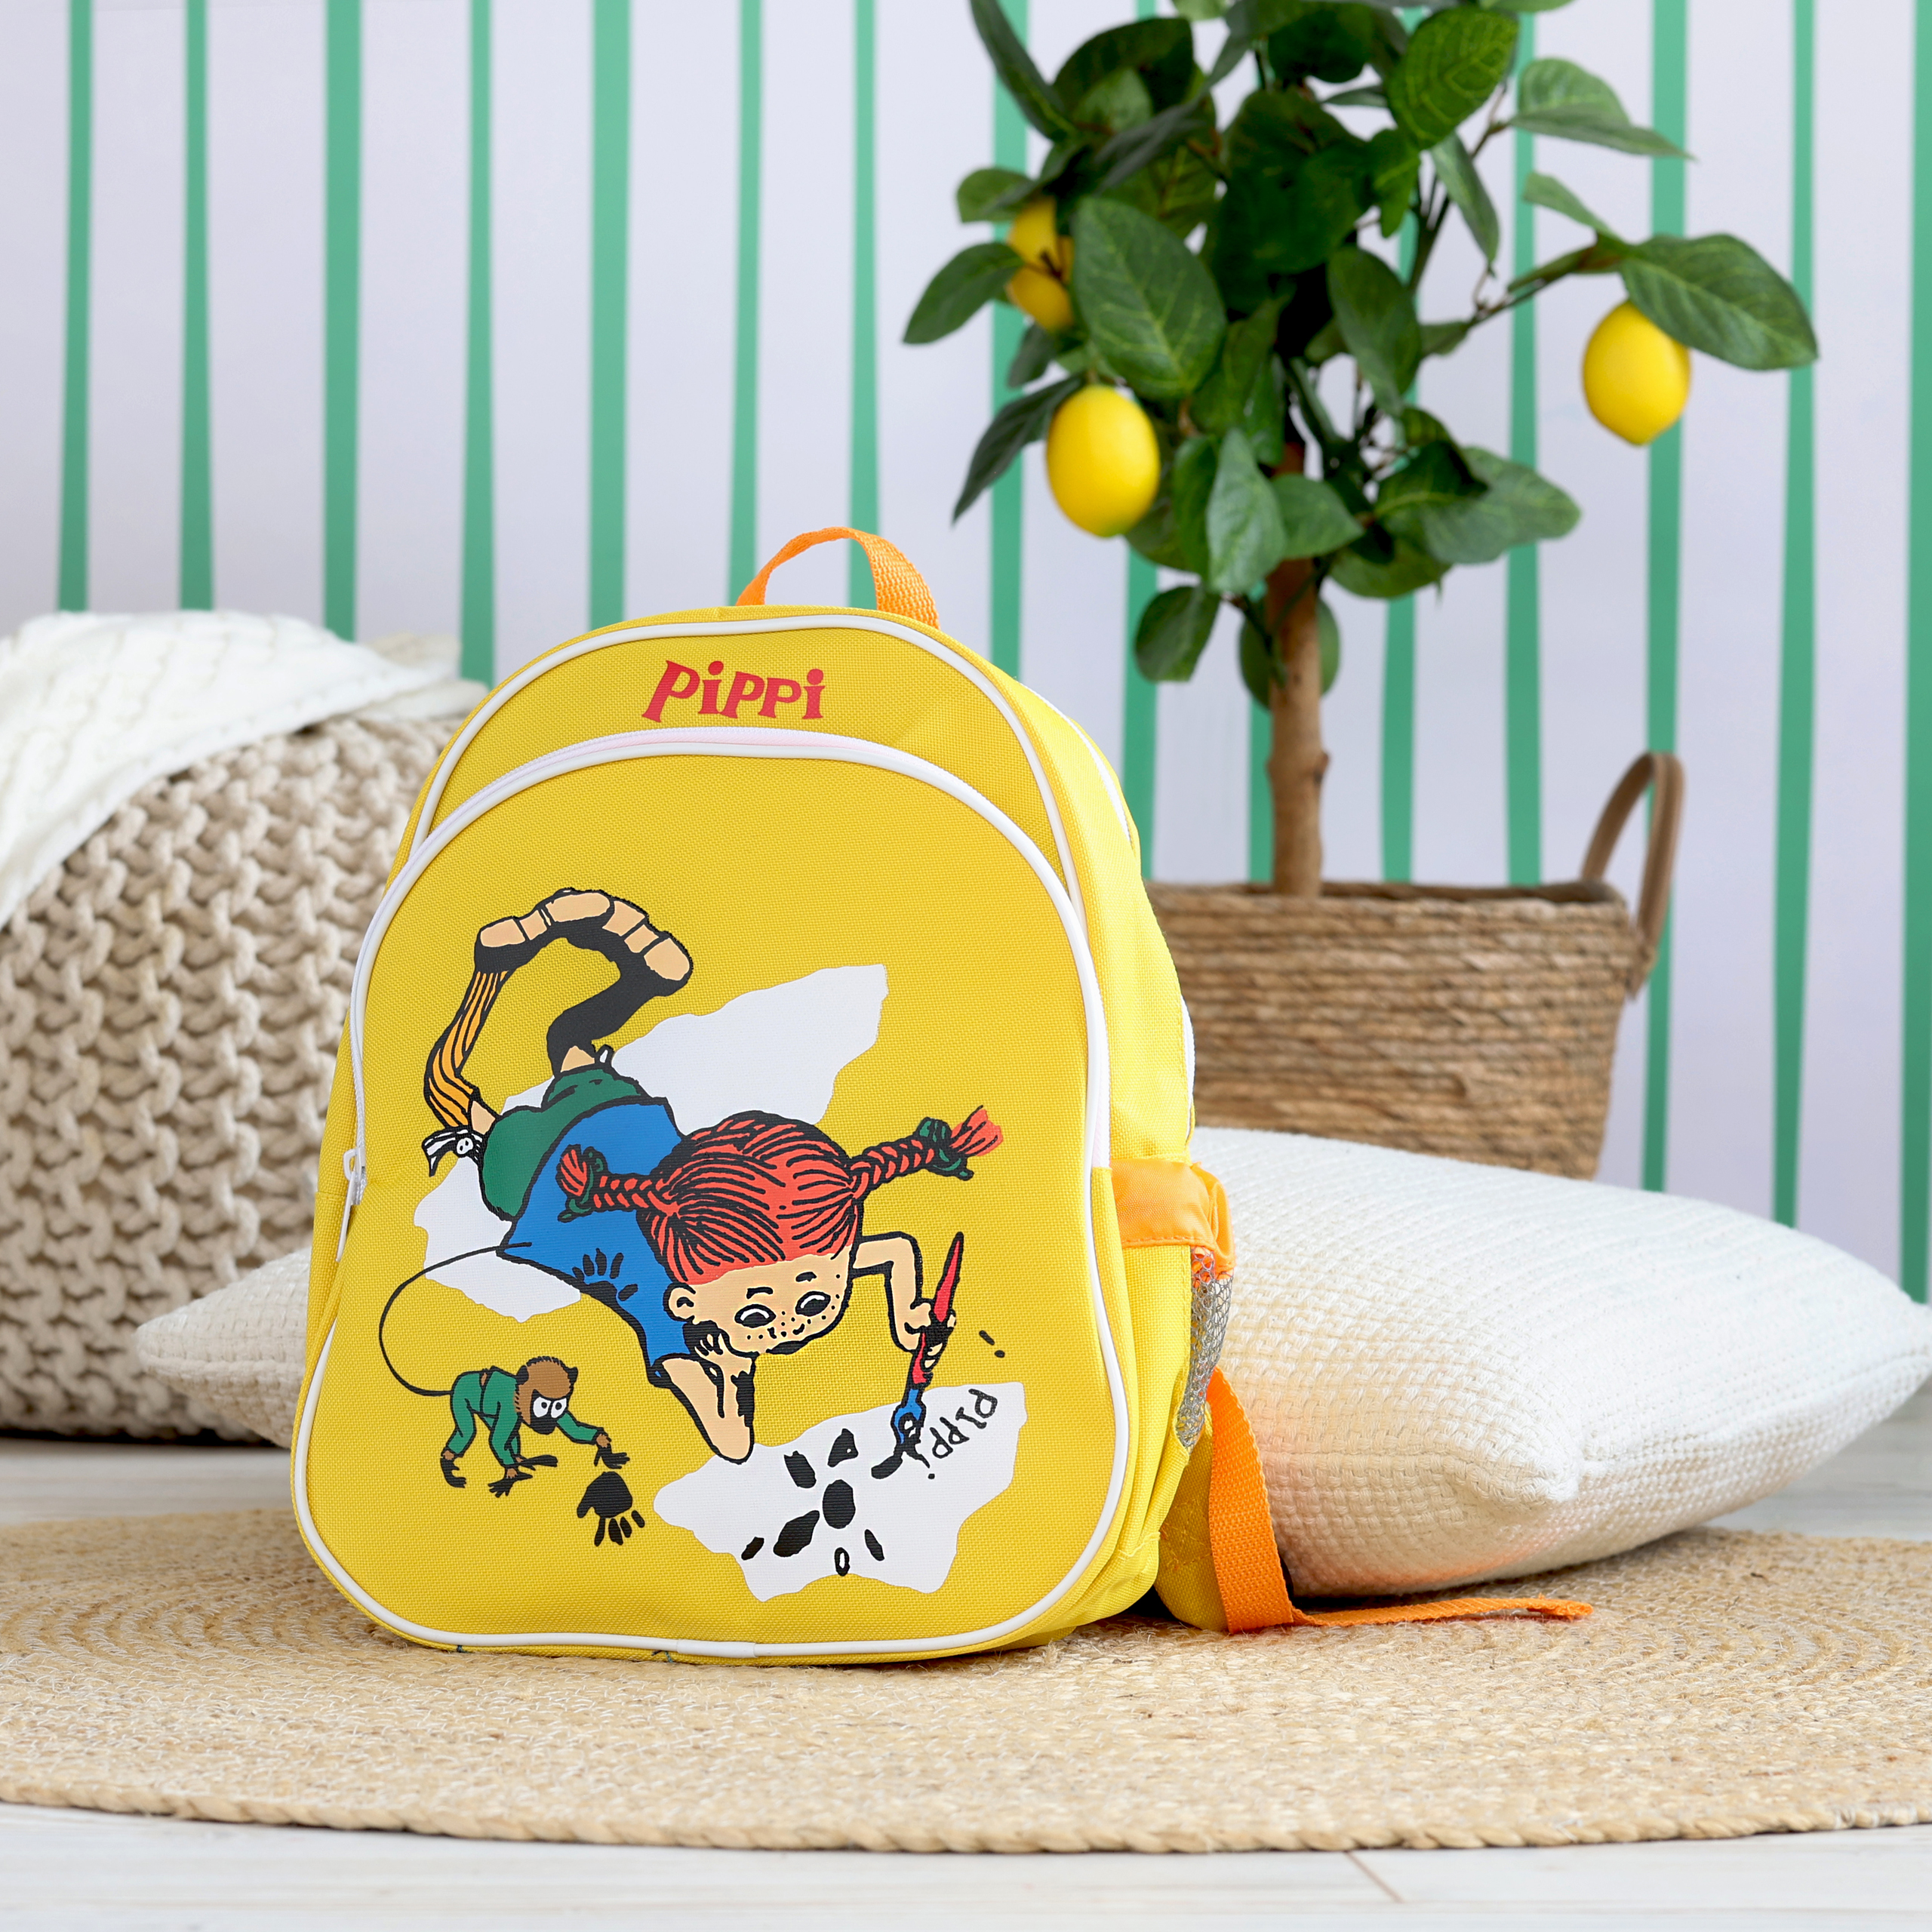 Pippi pippi kindertasche rucksack gelb